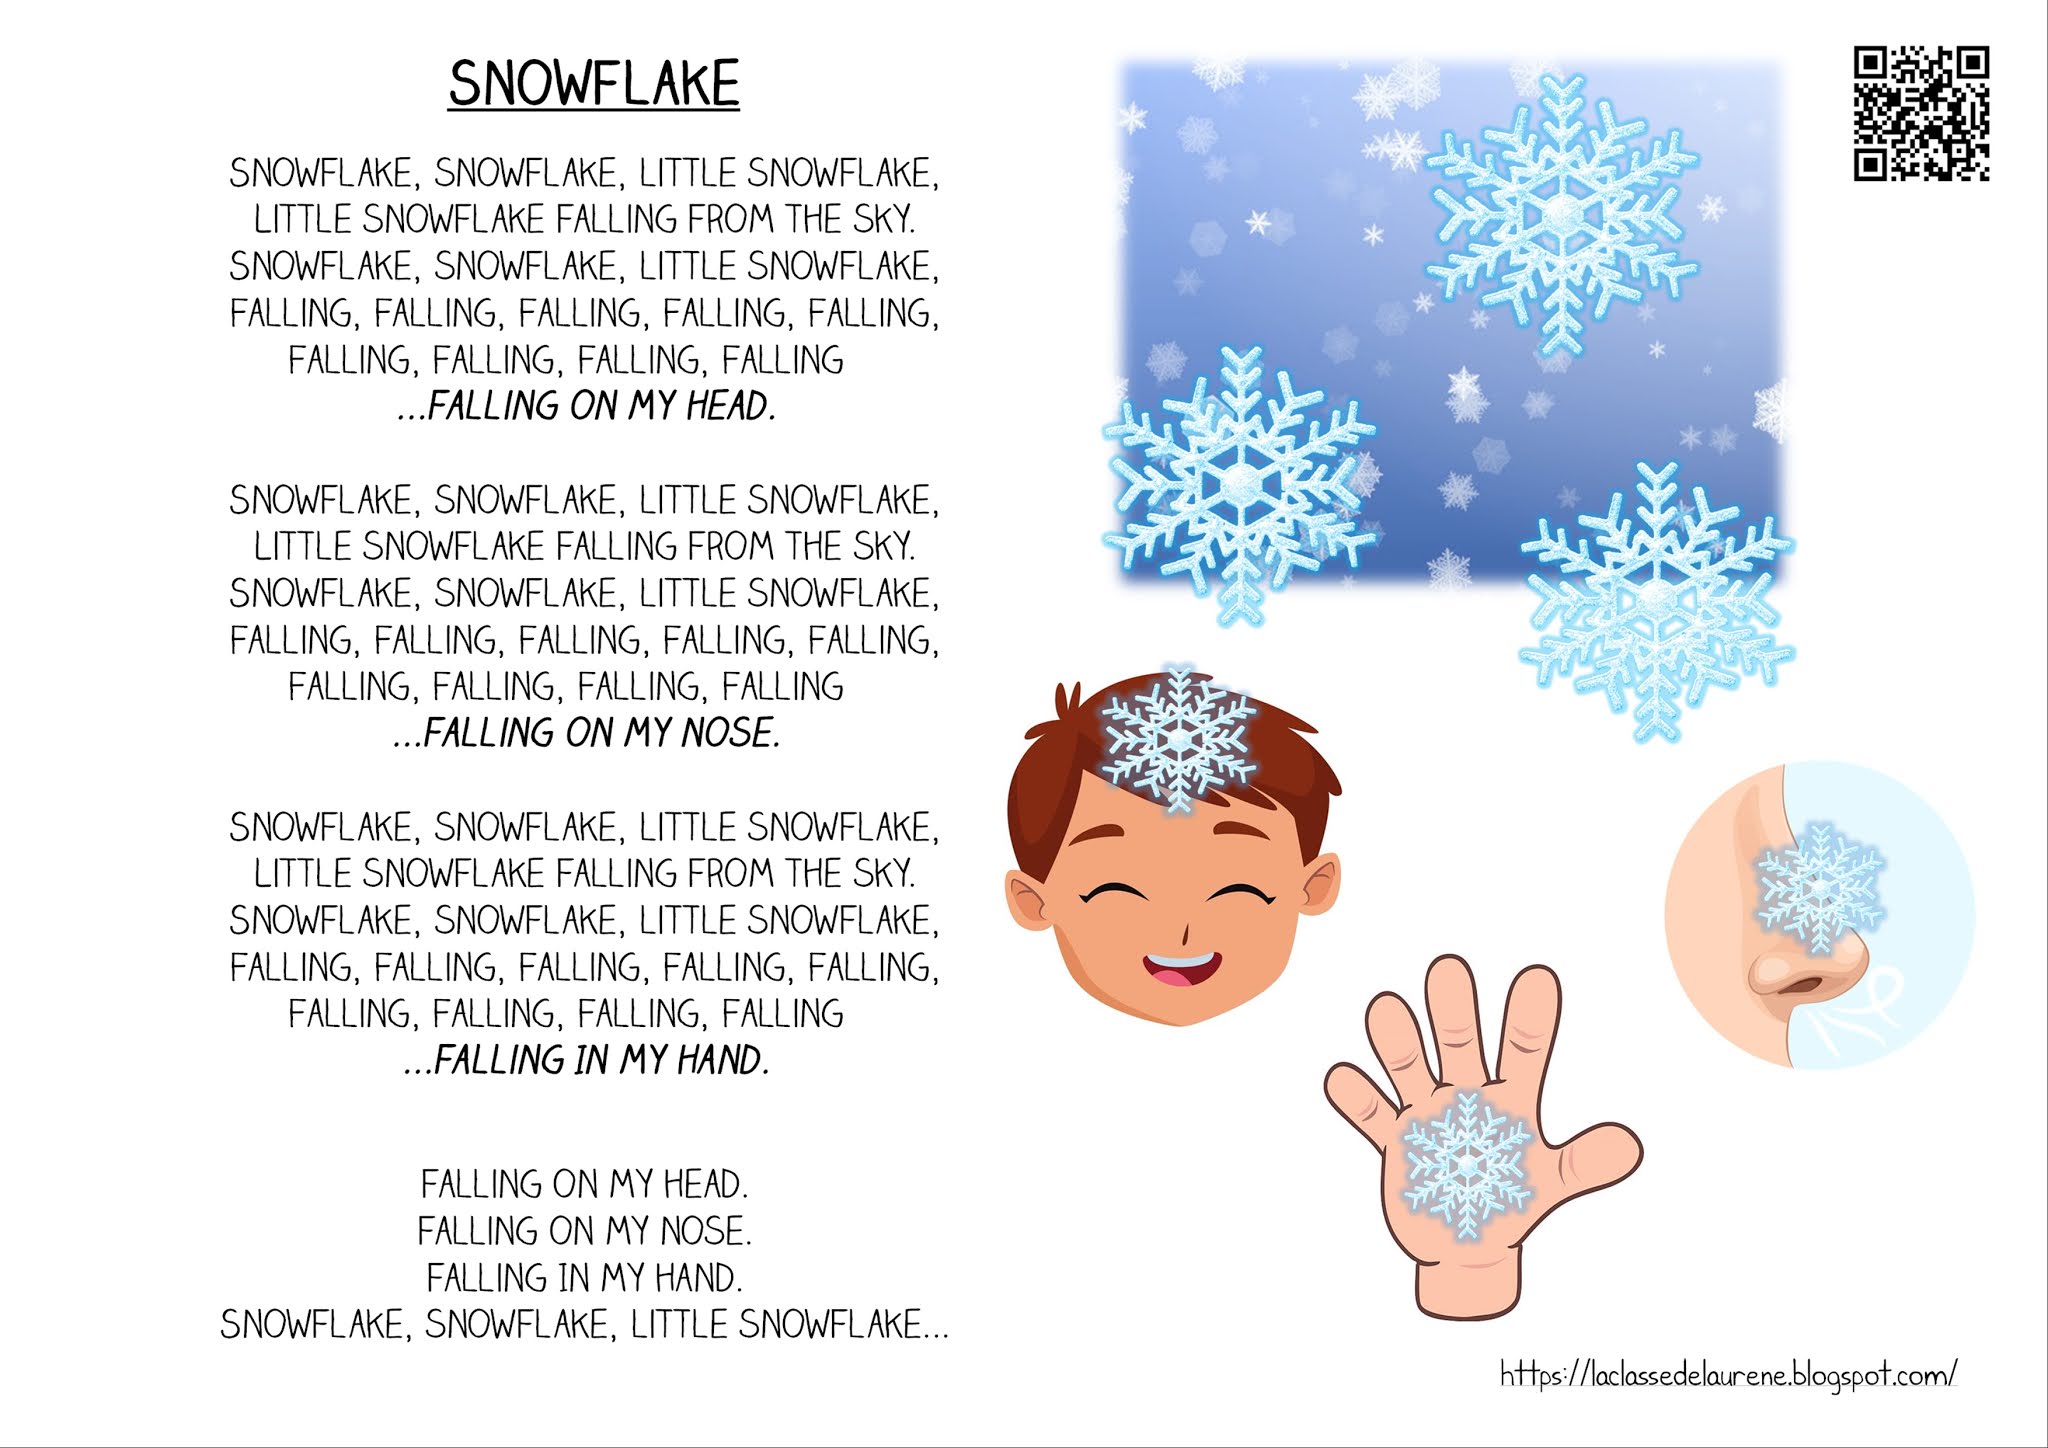 La maternelle de Laurène Paroles Snowflake